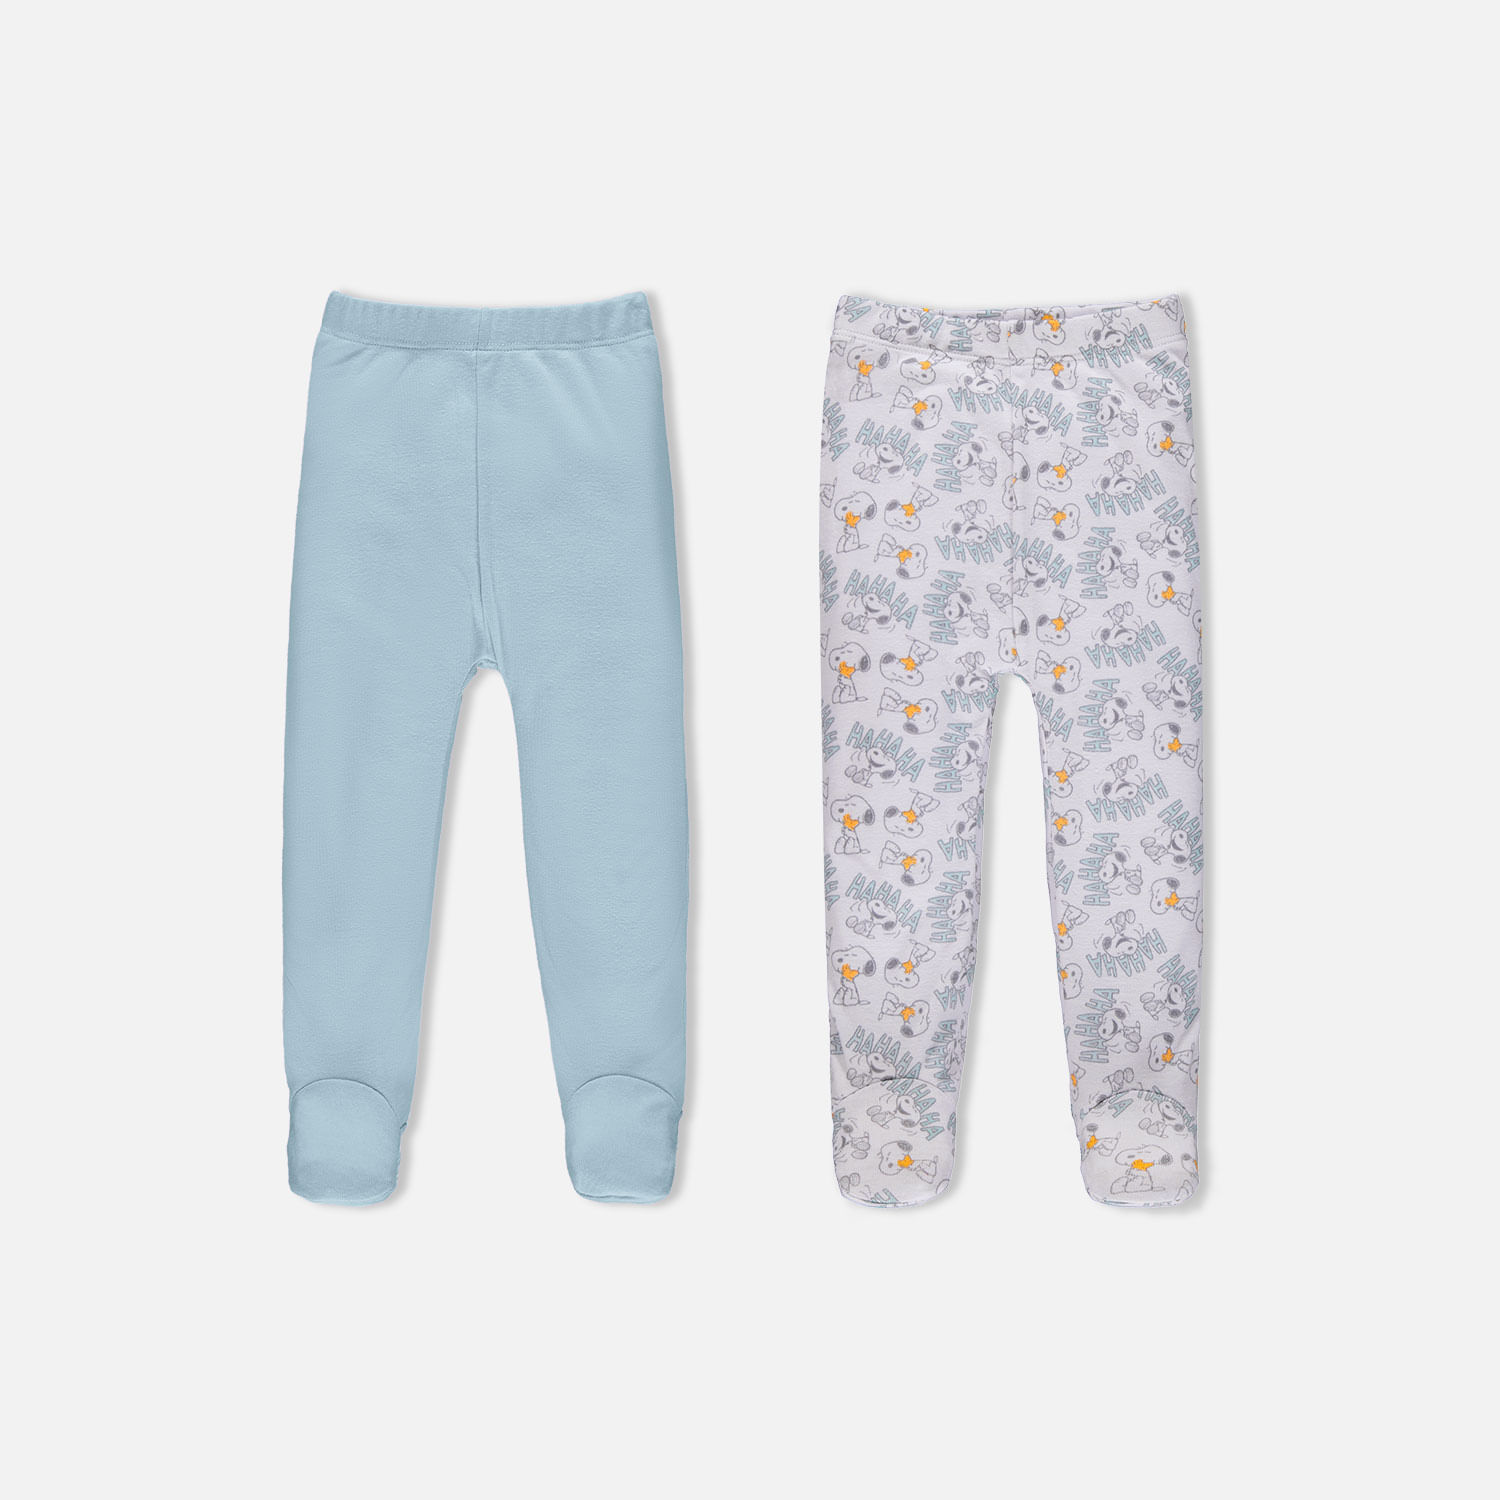 Pantalón X2 Snoopy con pies cubiertos azul y blanco para bebé niño